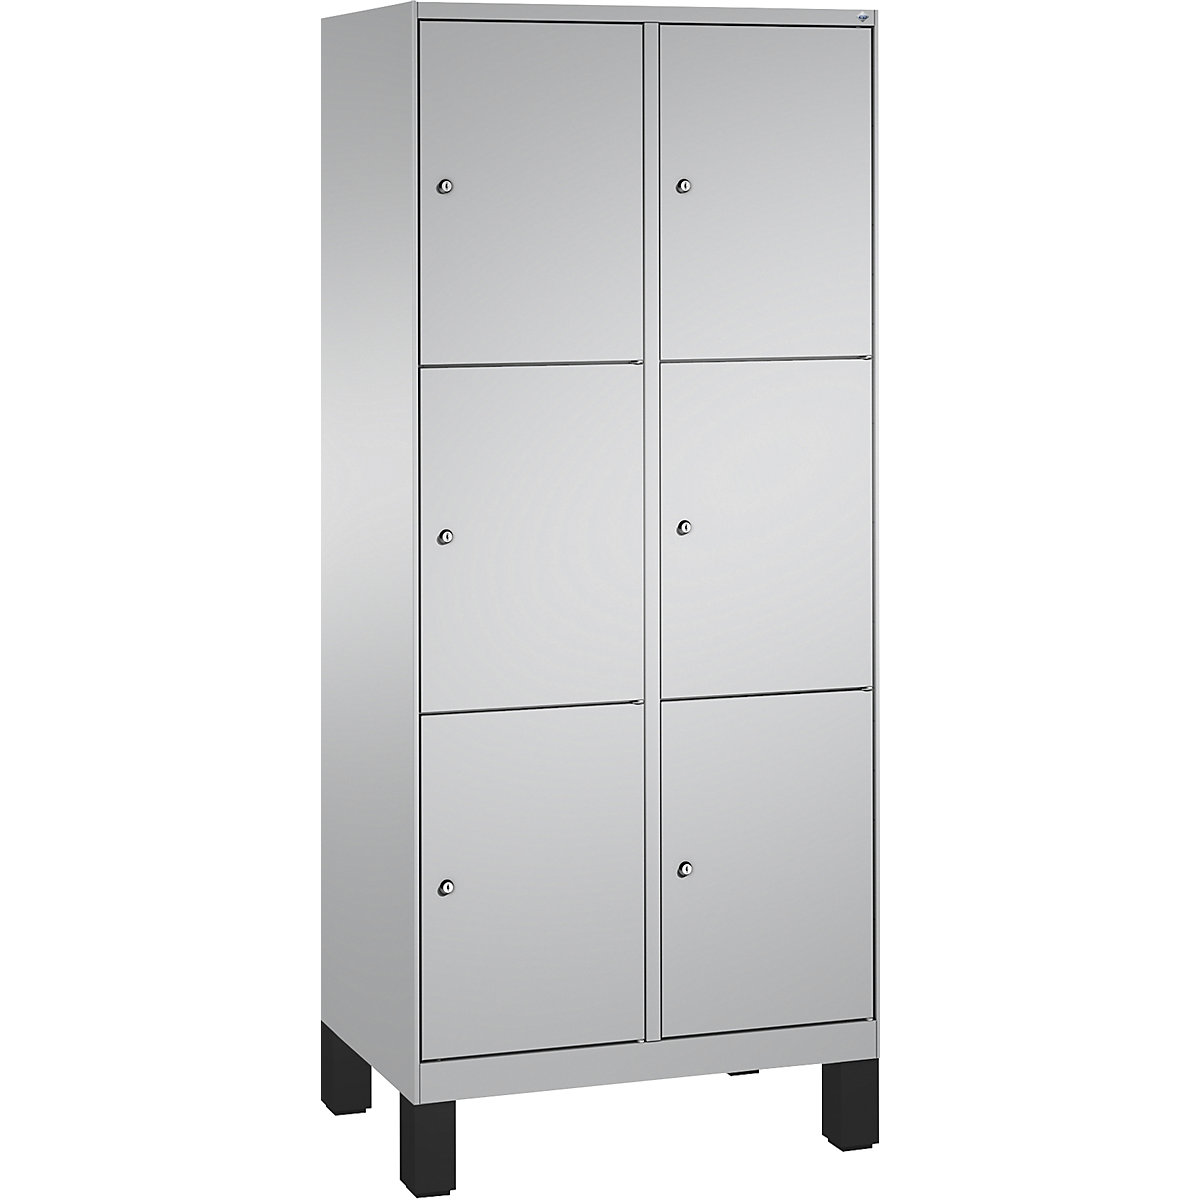 EVOLO locker unit, with feet – C+P, 2 compartments, 3 shelf compartments each, compartment width 400 mm, white aluminium / white aluminium